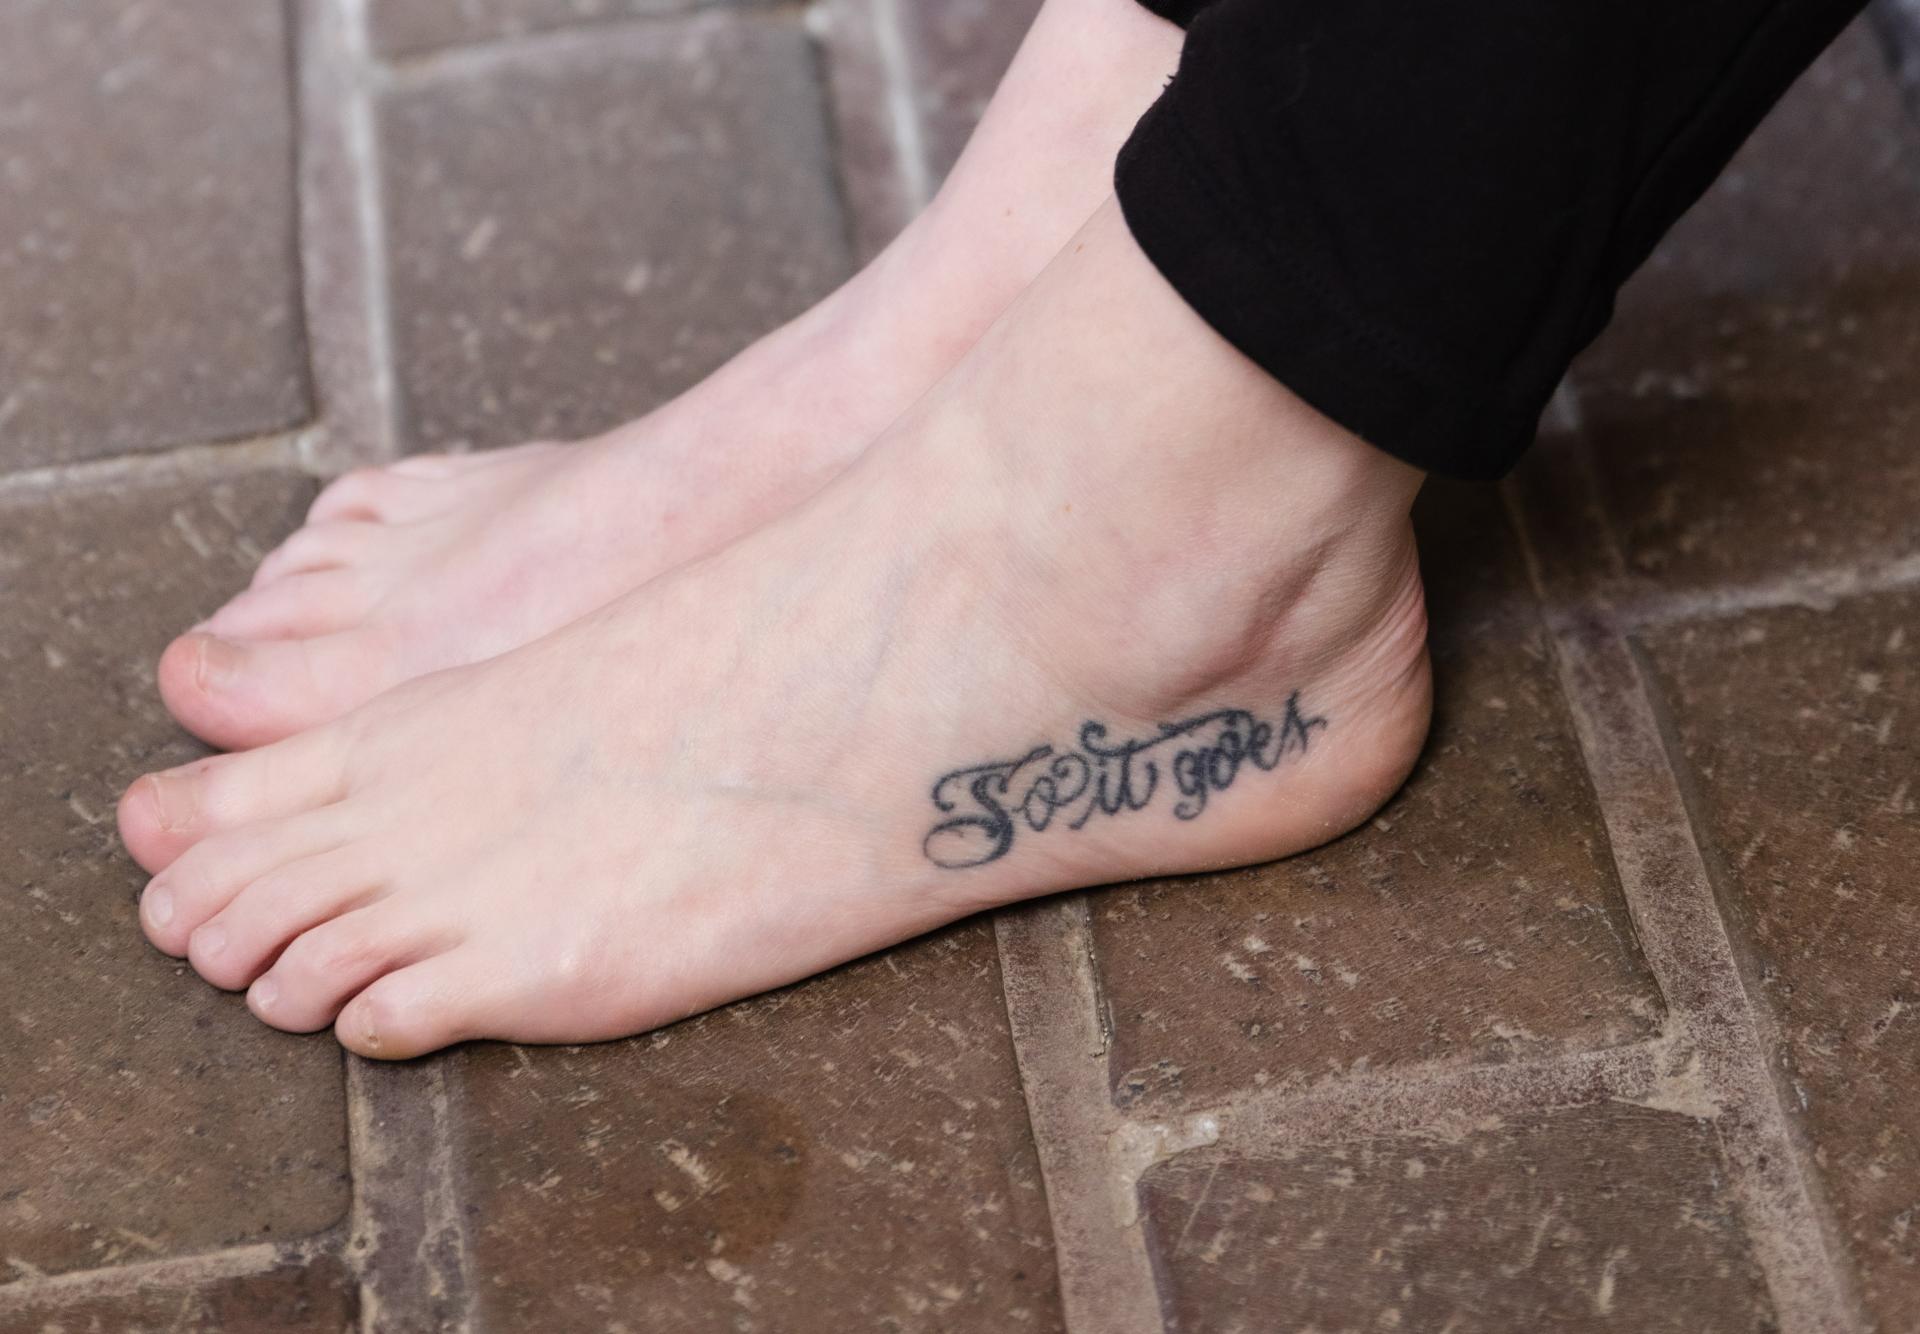 Megan Pfister's "So it goes" tattoo.